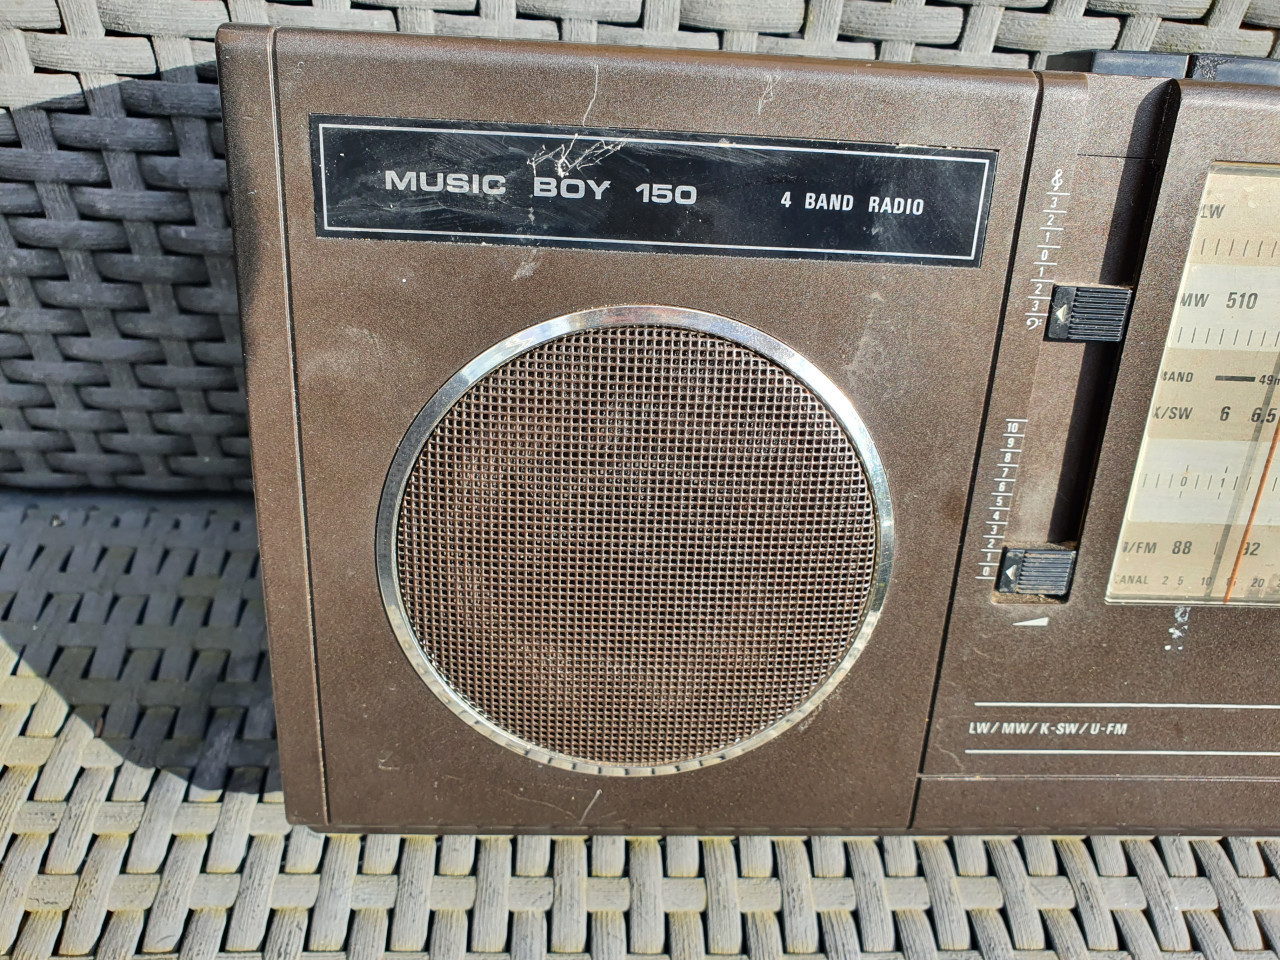 Mooie vintage Grundig music boy radio 150, in werkende staat...